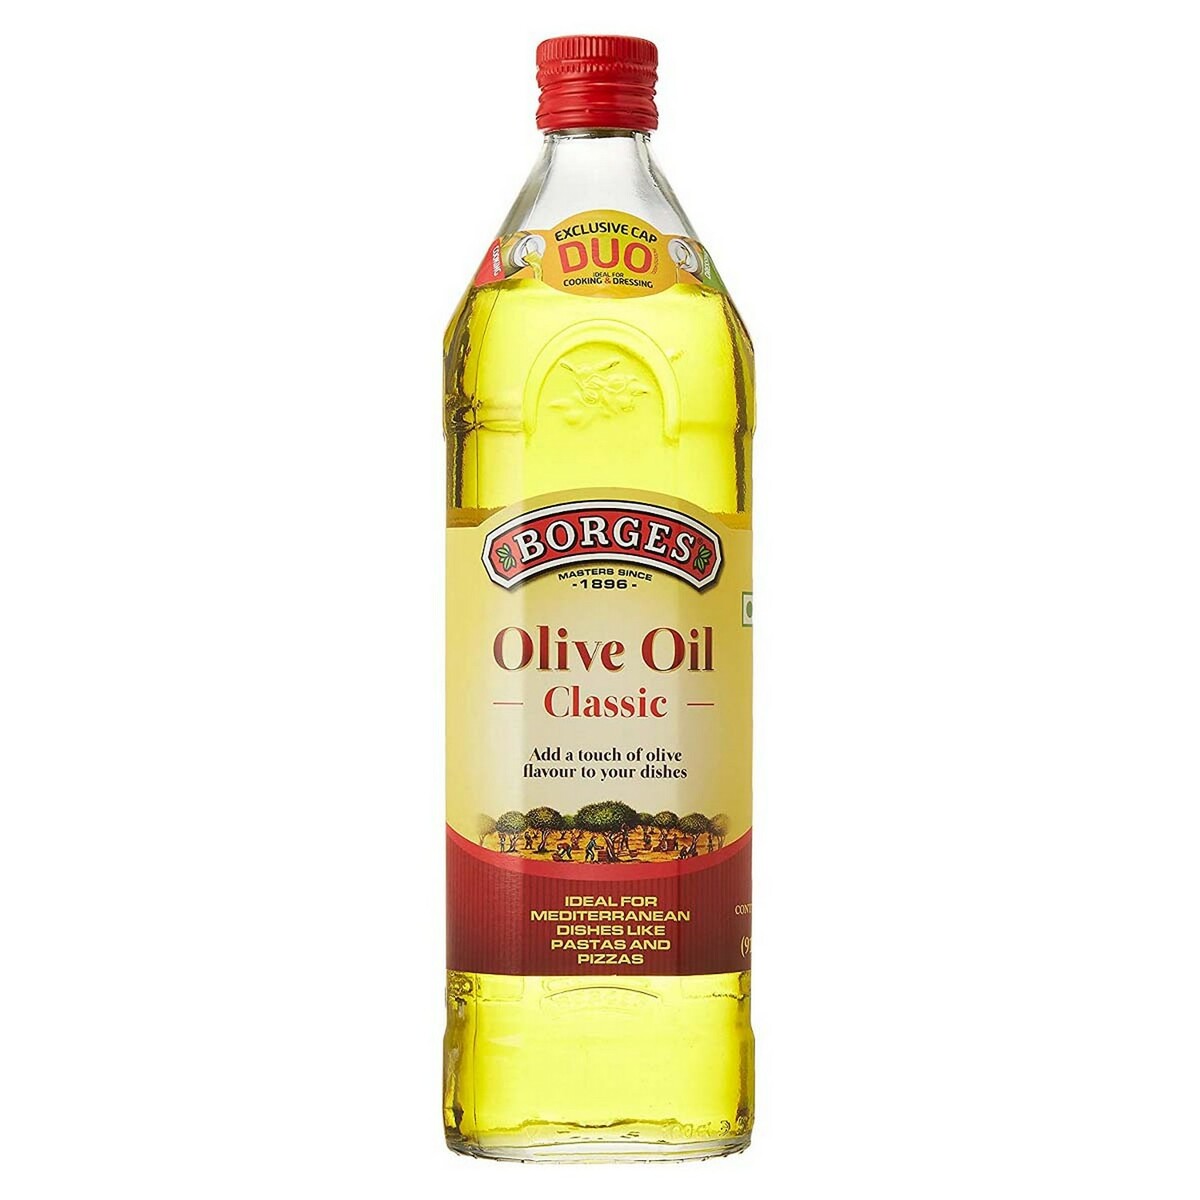 Borges Pure Olive Oil 1 Litre